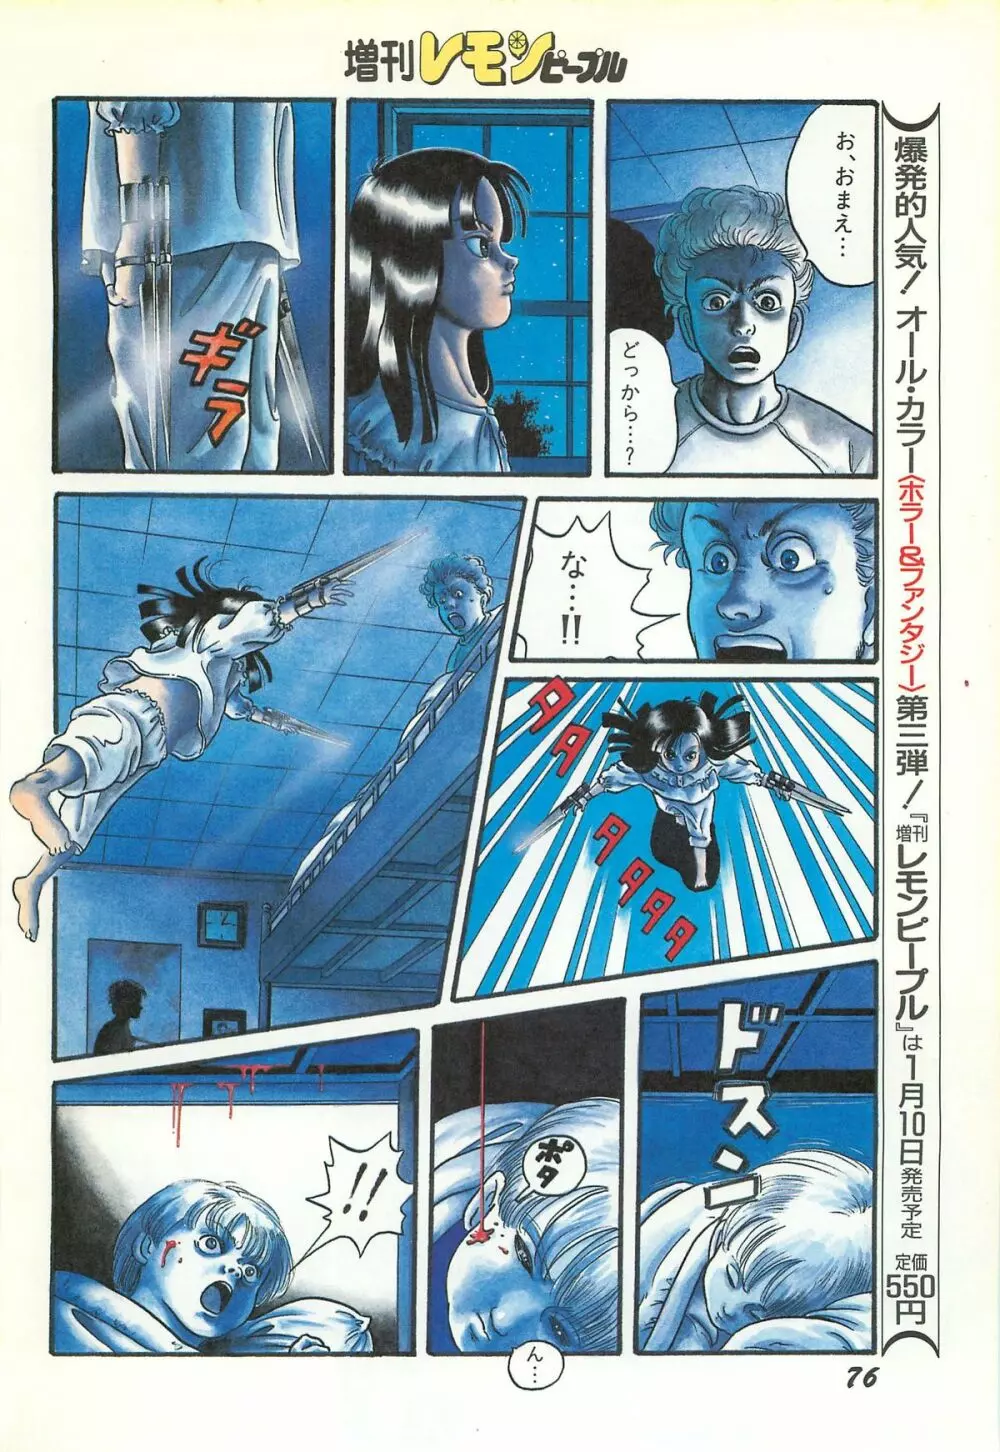 レモンピープル 1986年11月増刊号 Vol.65 オールカラー 78ページ